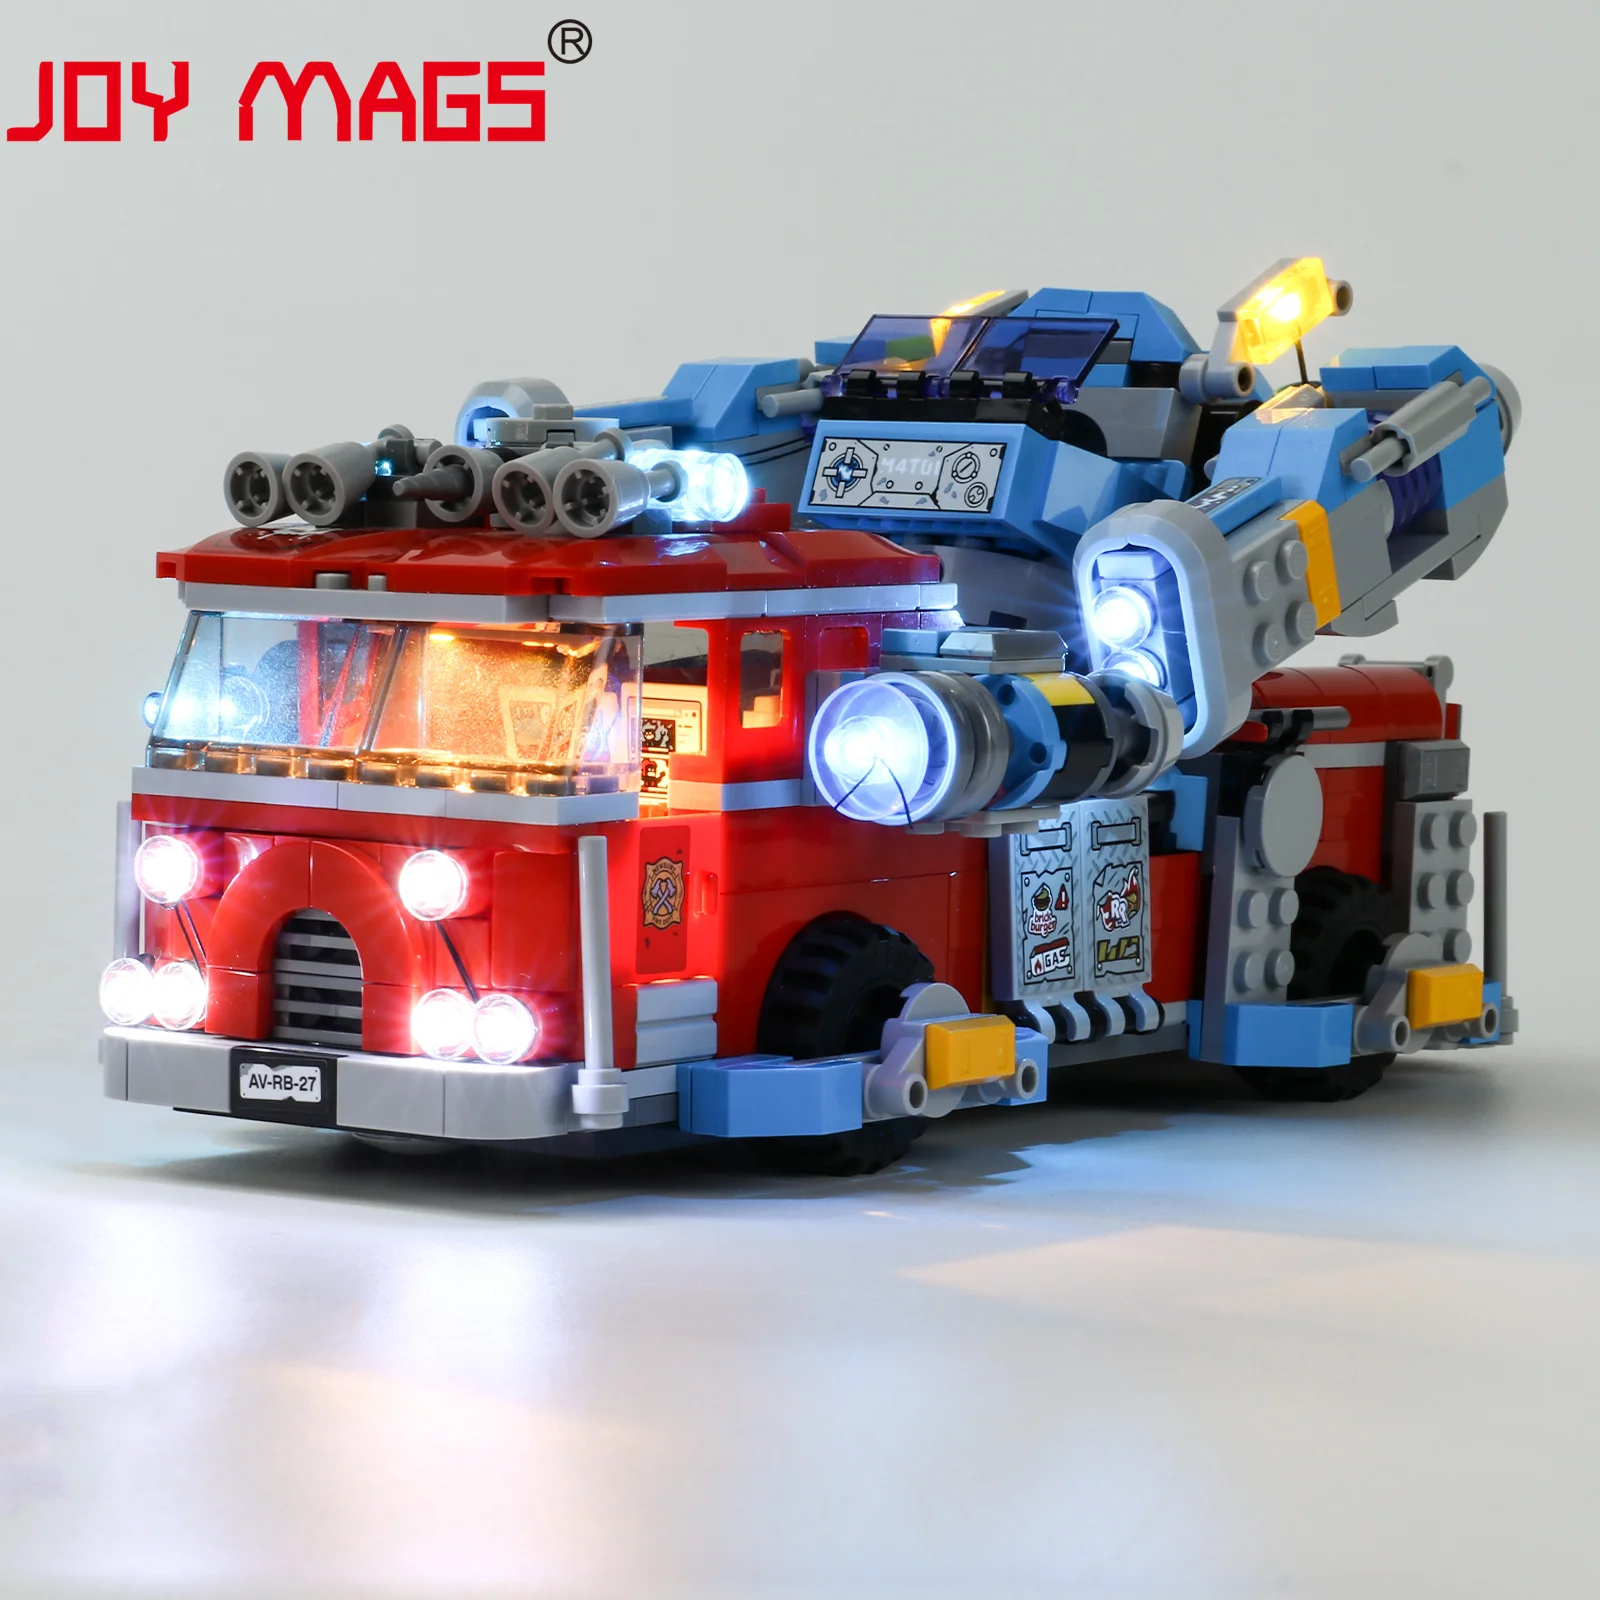 

JOY MAGS Led Light Kit For 70436 Phantom Fire Truck 3000, (NOT Include Model)